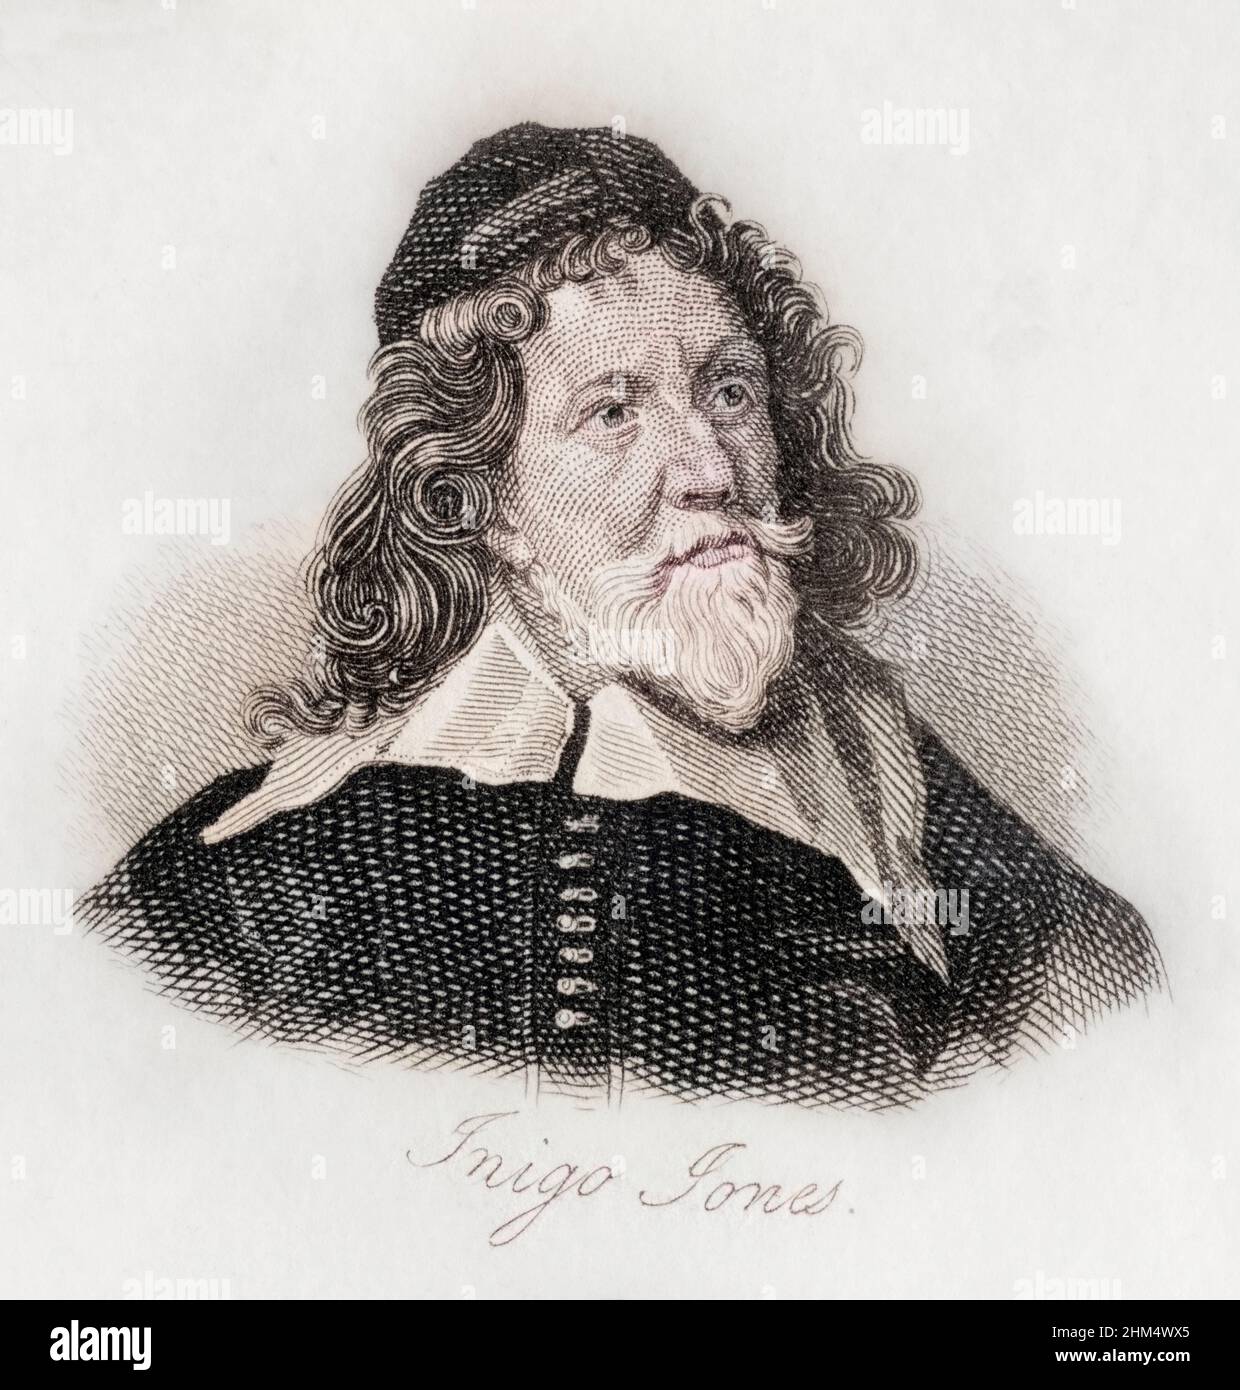 Inigo Jones, 1573-1652. Englischer Maler, Architekt und Designer. Gestochen von J.W.Cook. Stockfoto